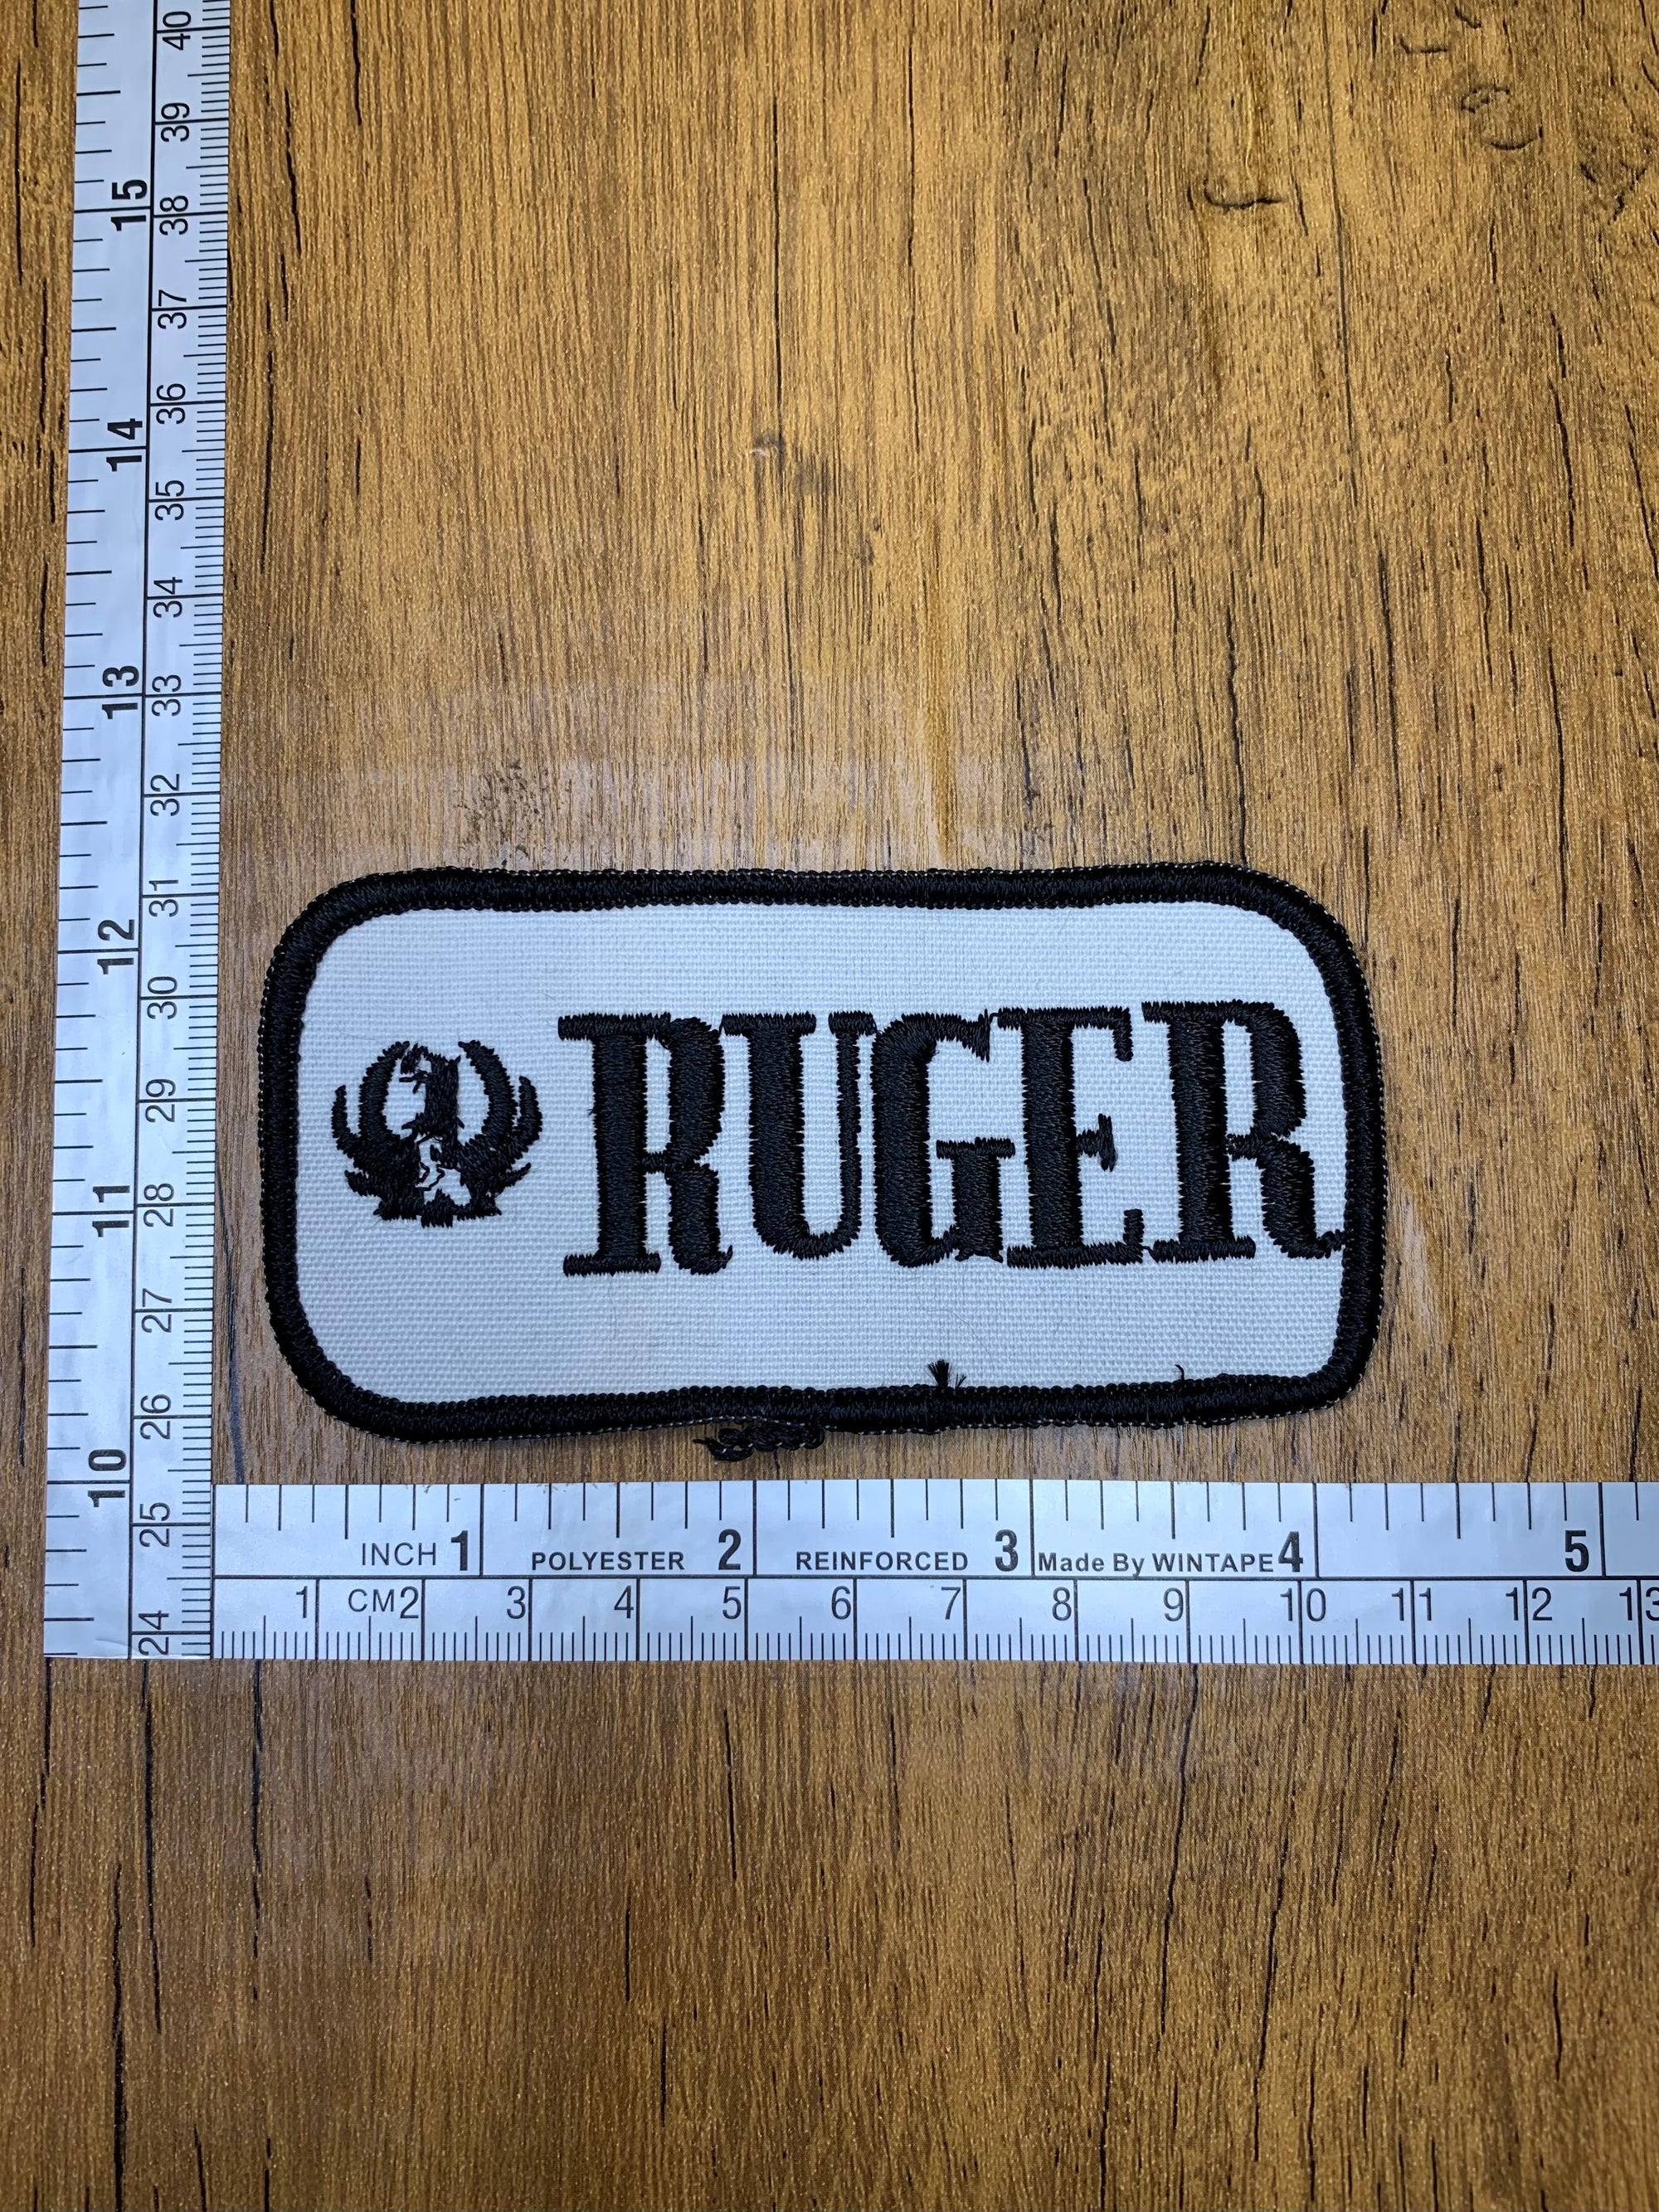 Vintage Ruger